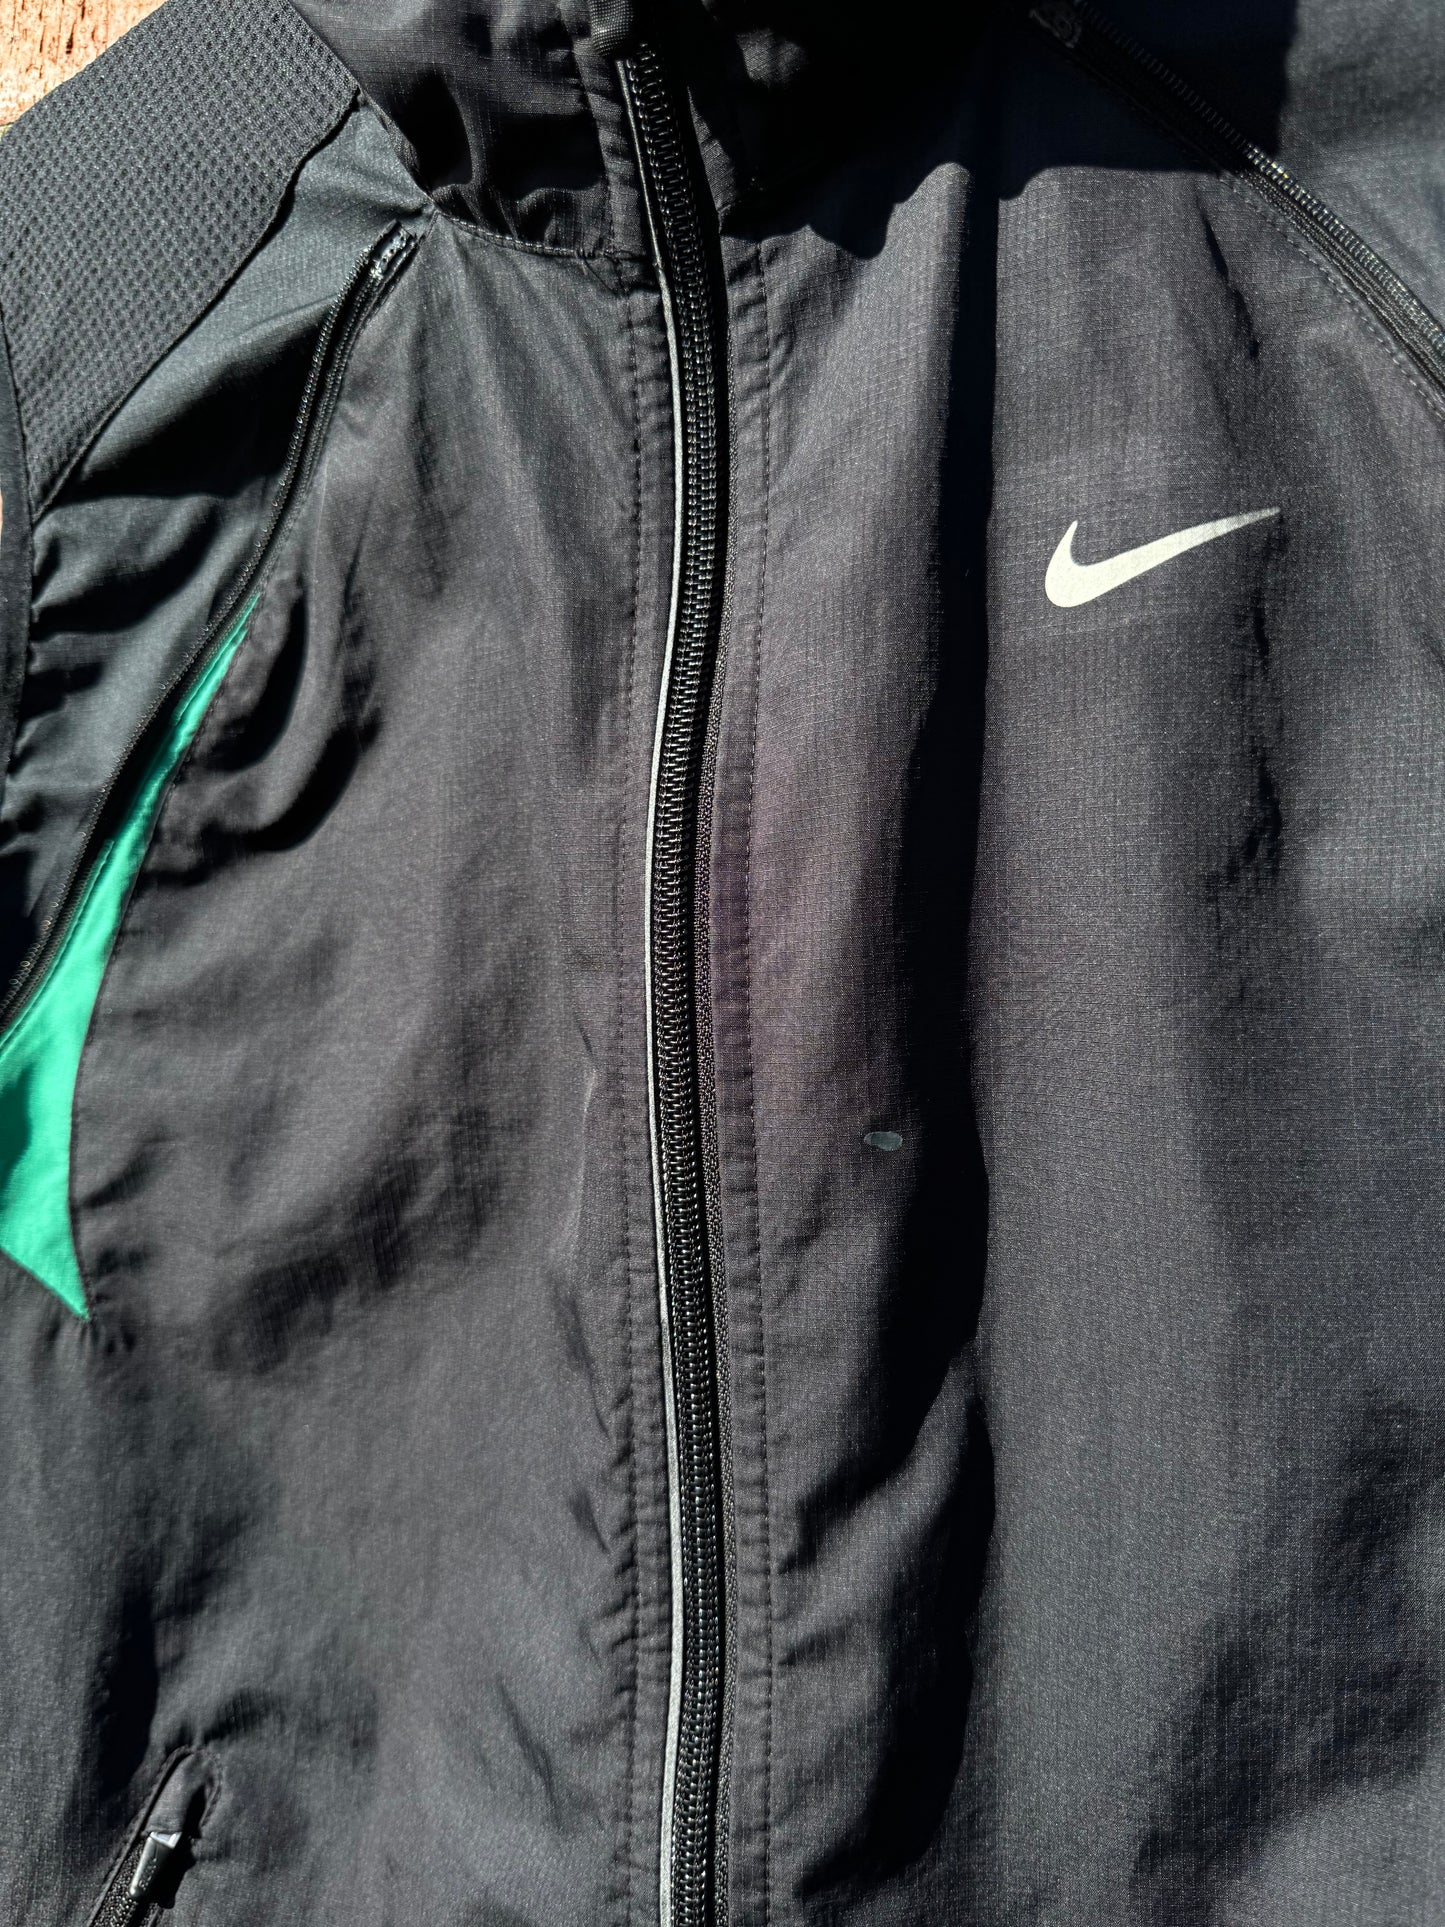 Vintage Nike 2 in 1 Running Jacket